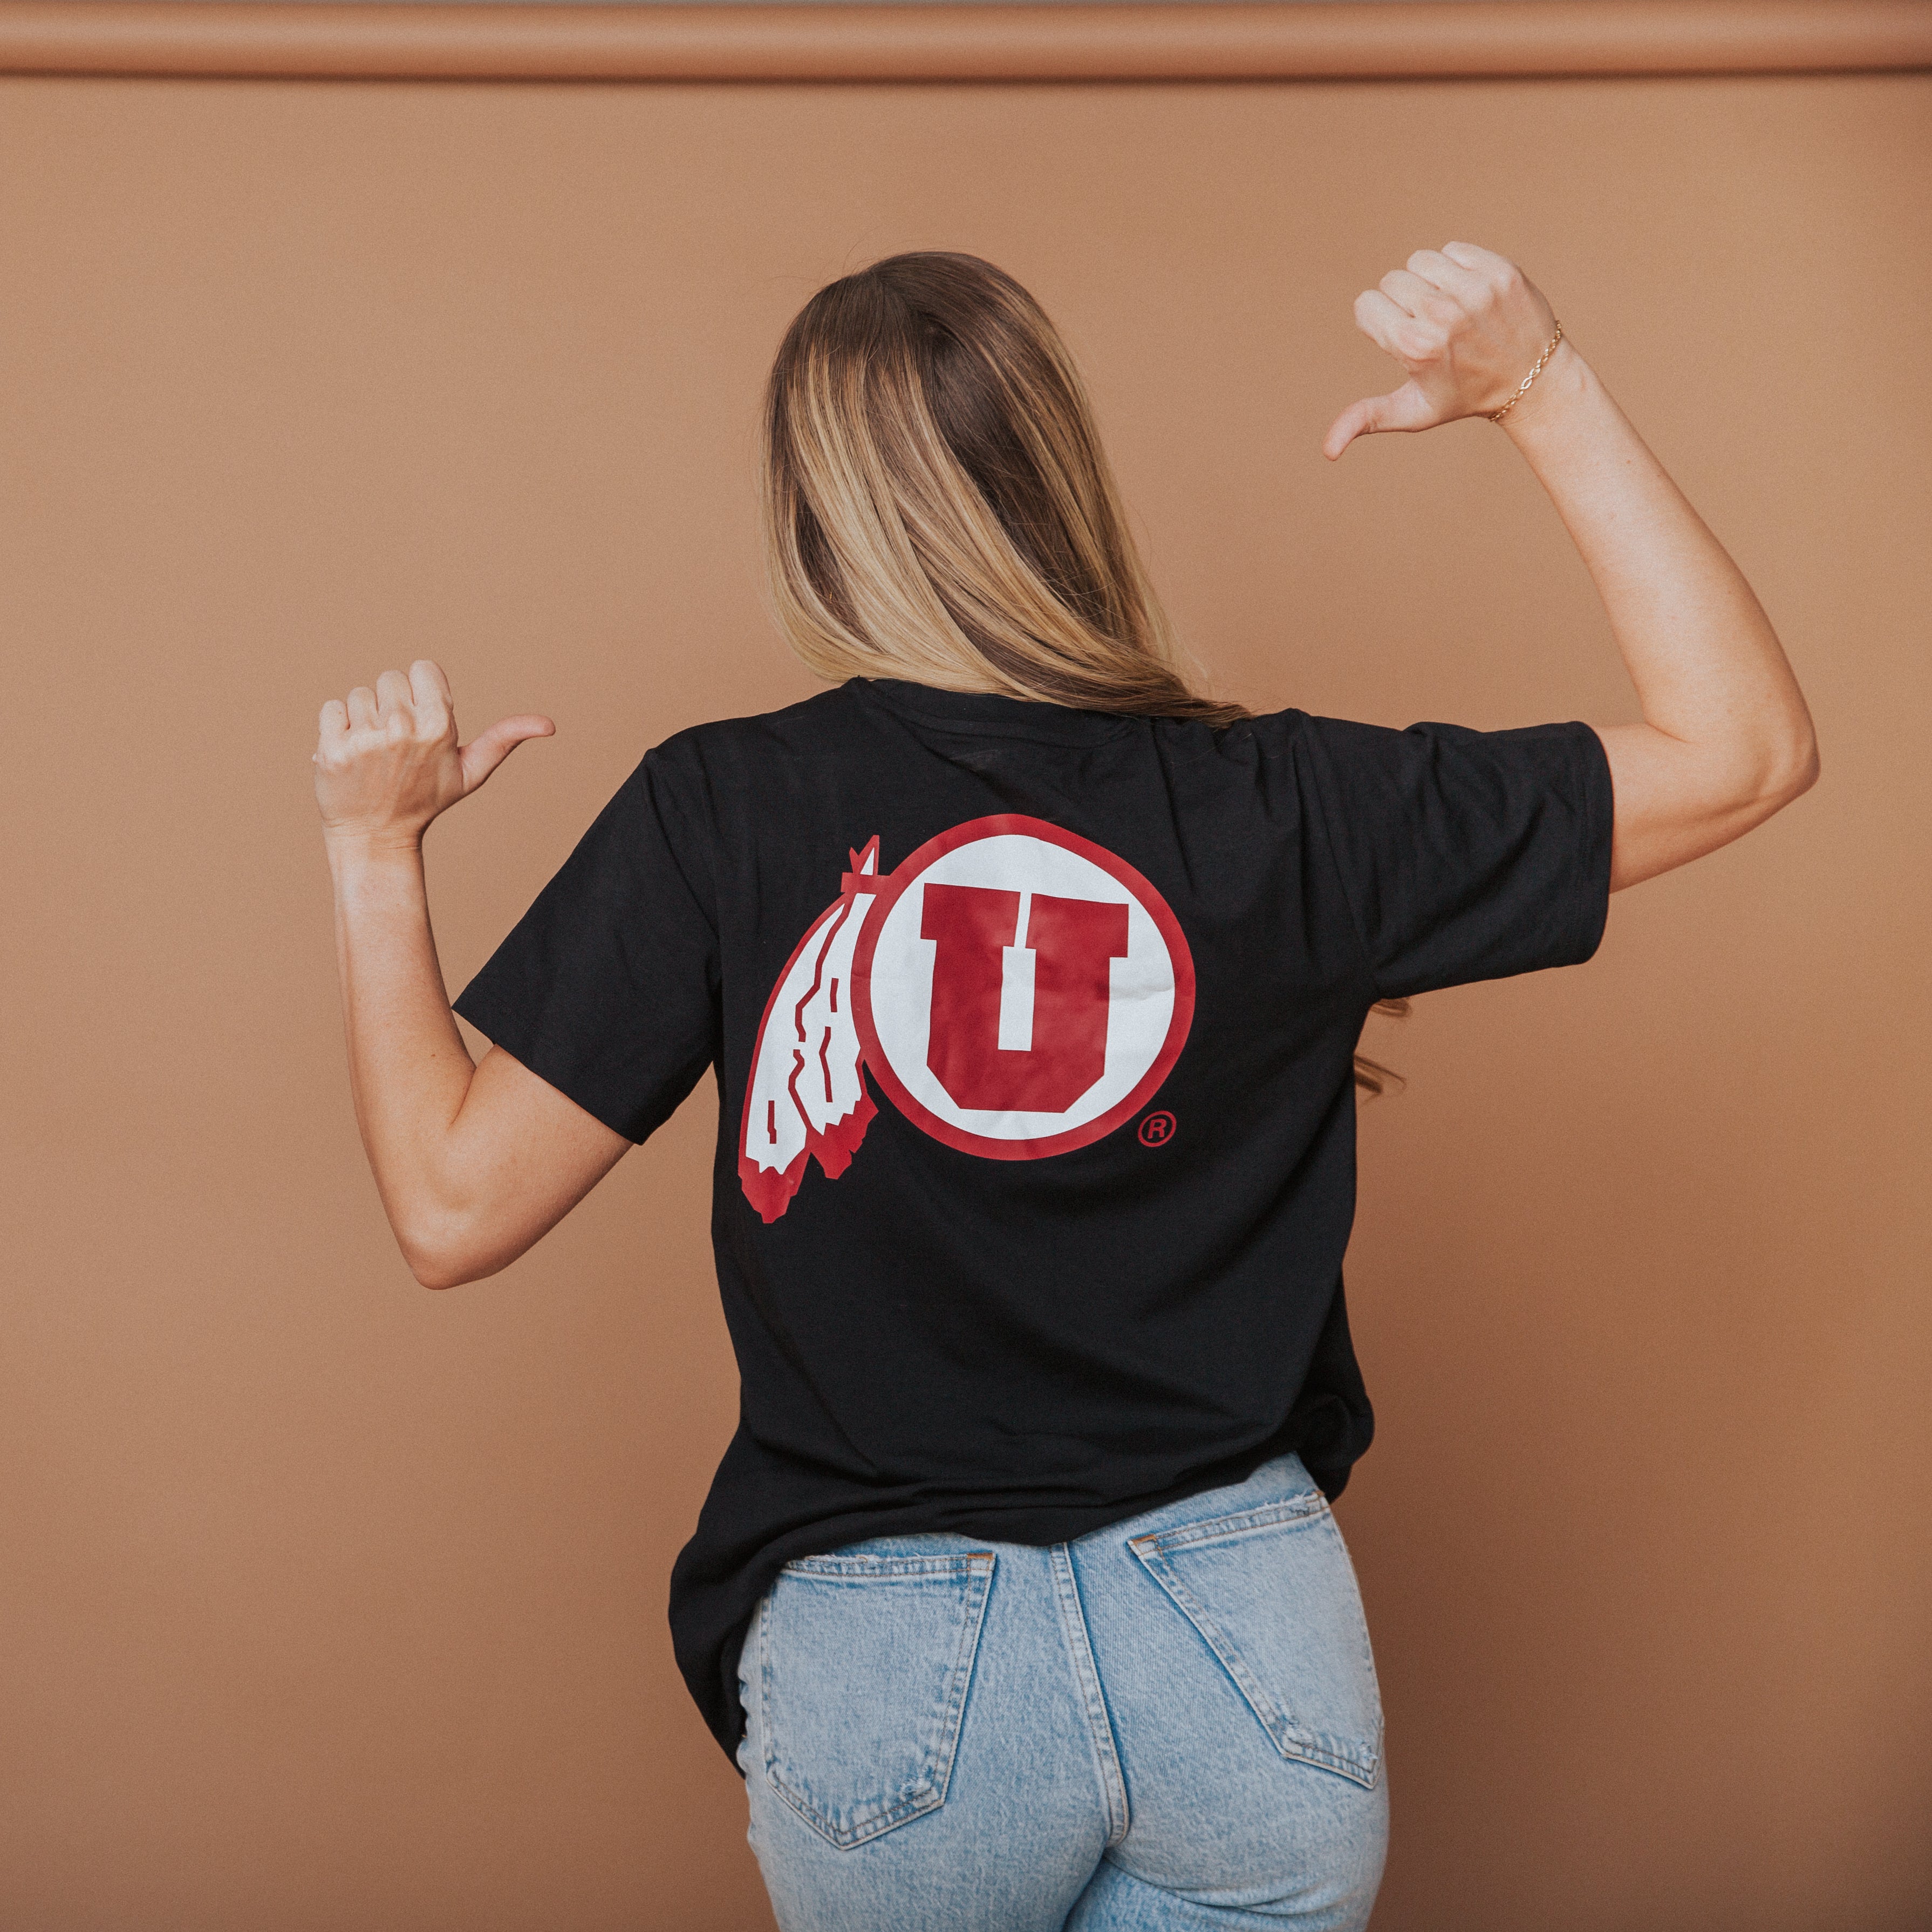 Adult Unisex Tee - 'University of Utah'